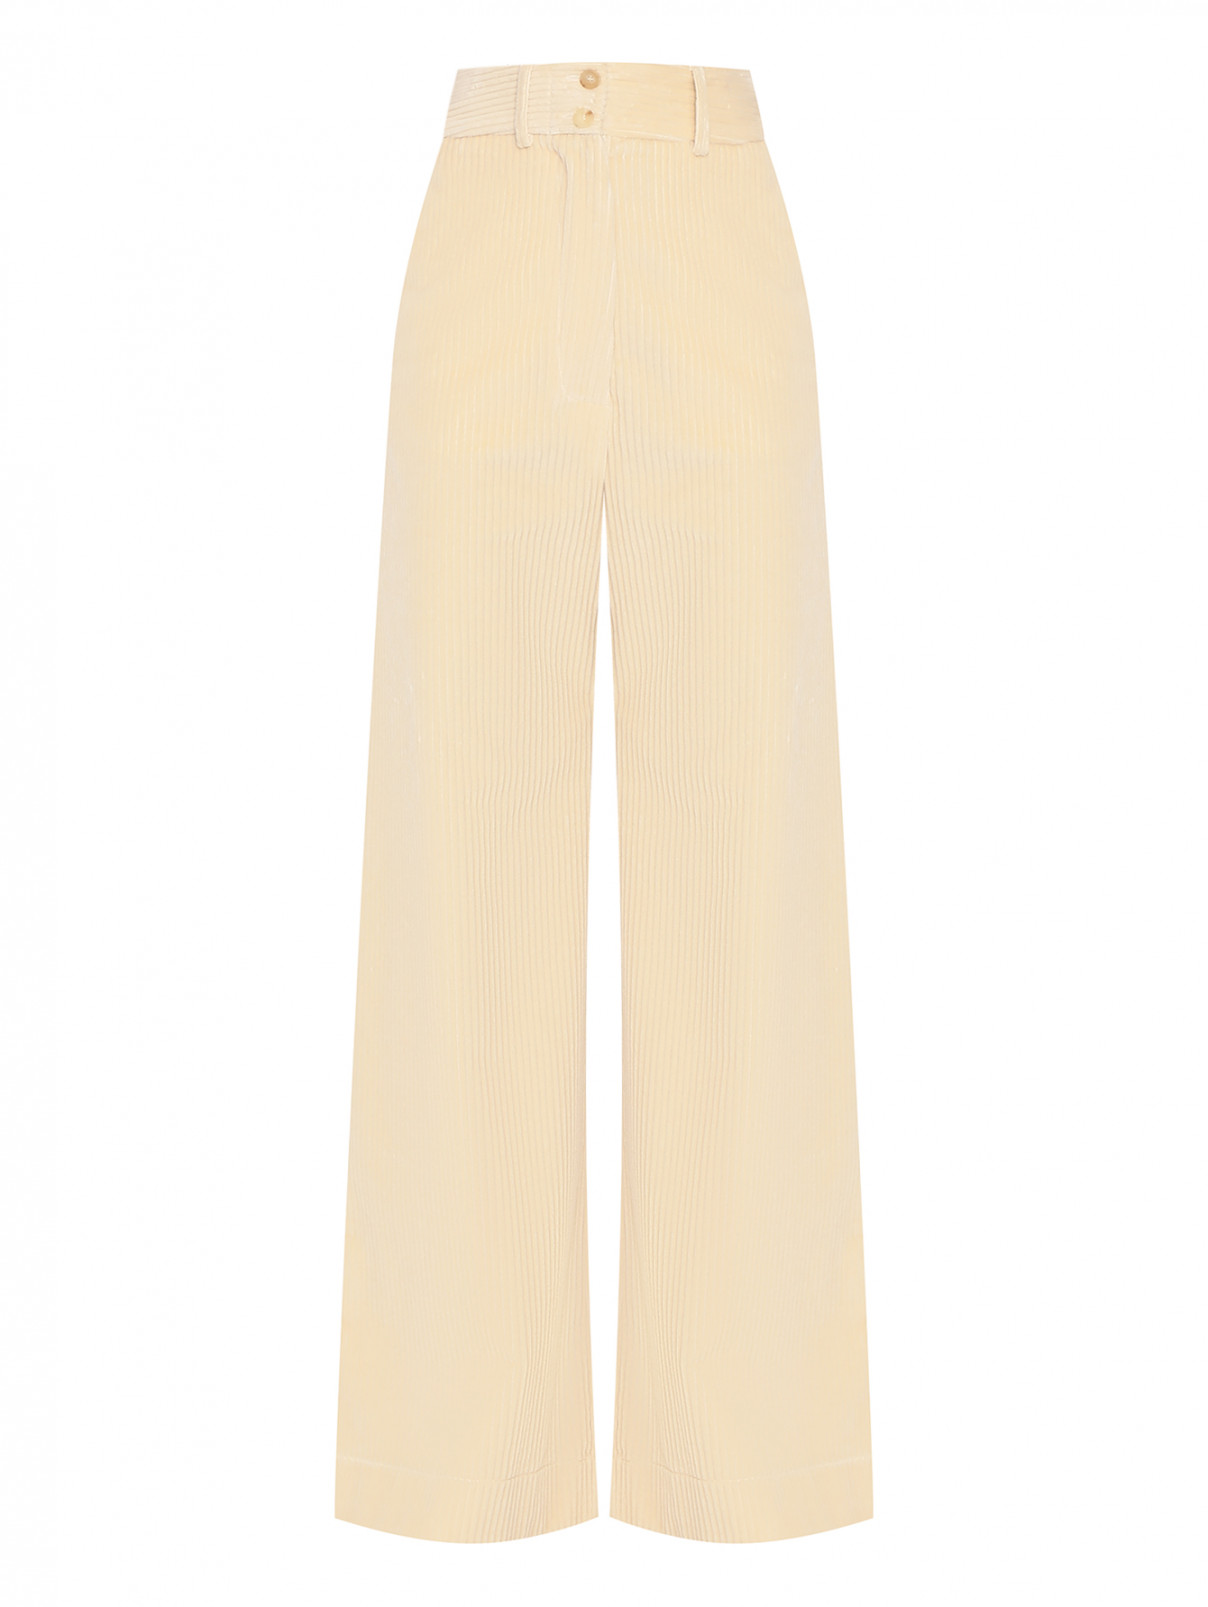 Вельветовые широкие брюки на высокой посадке Etro  –  Общий вид  – Цвет:  Бежевый